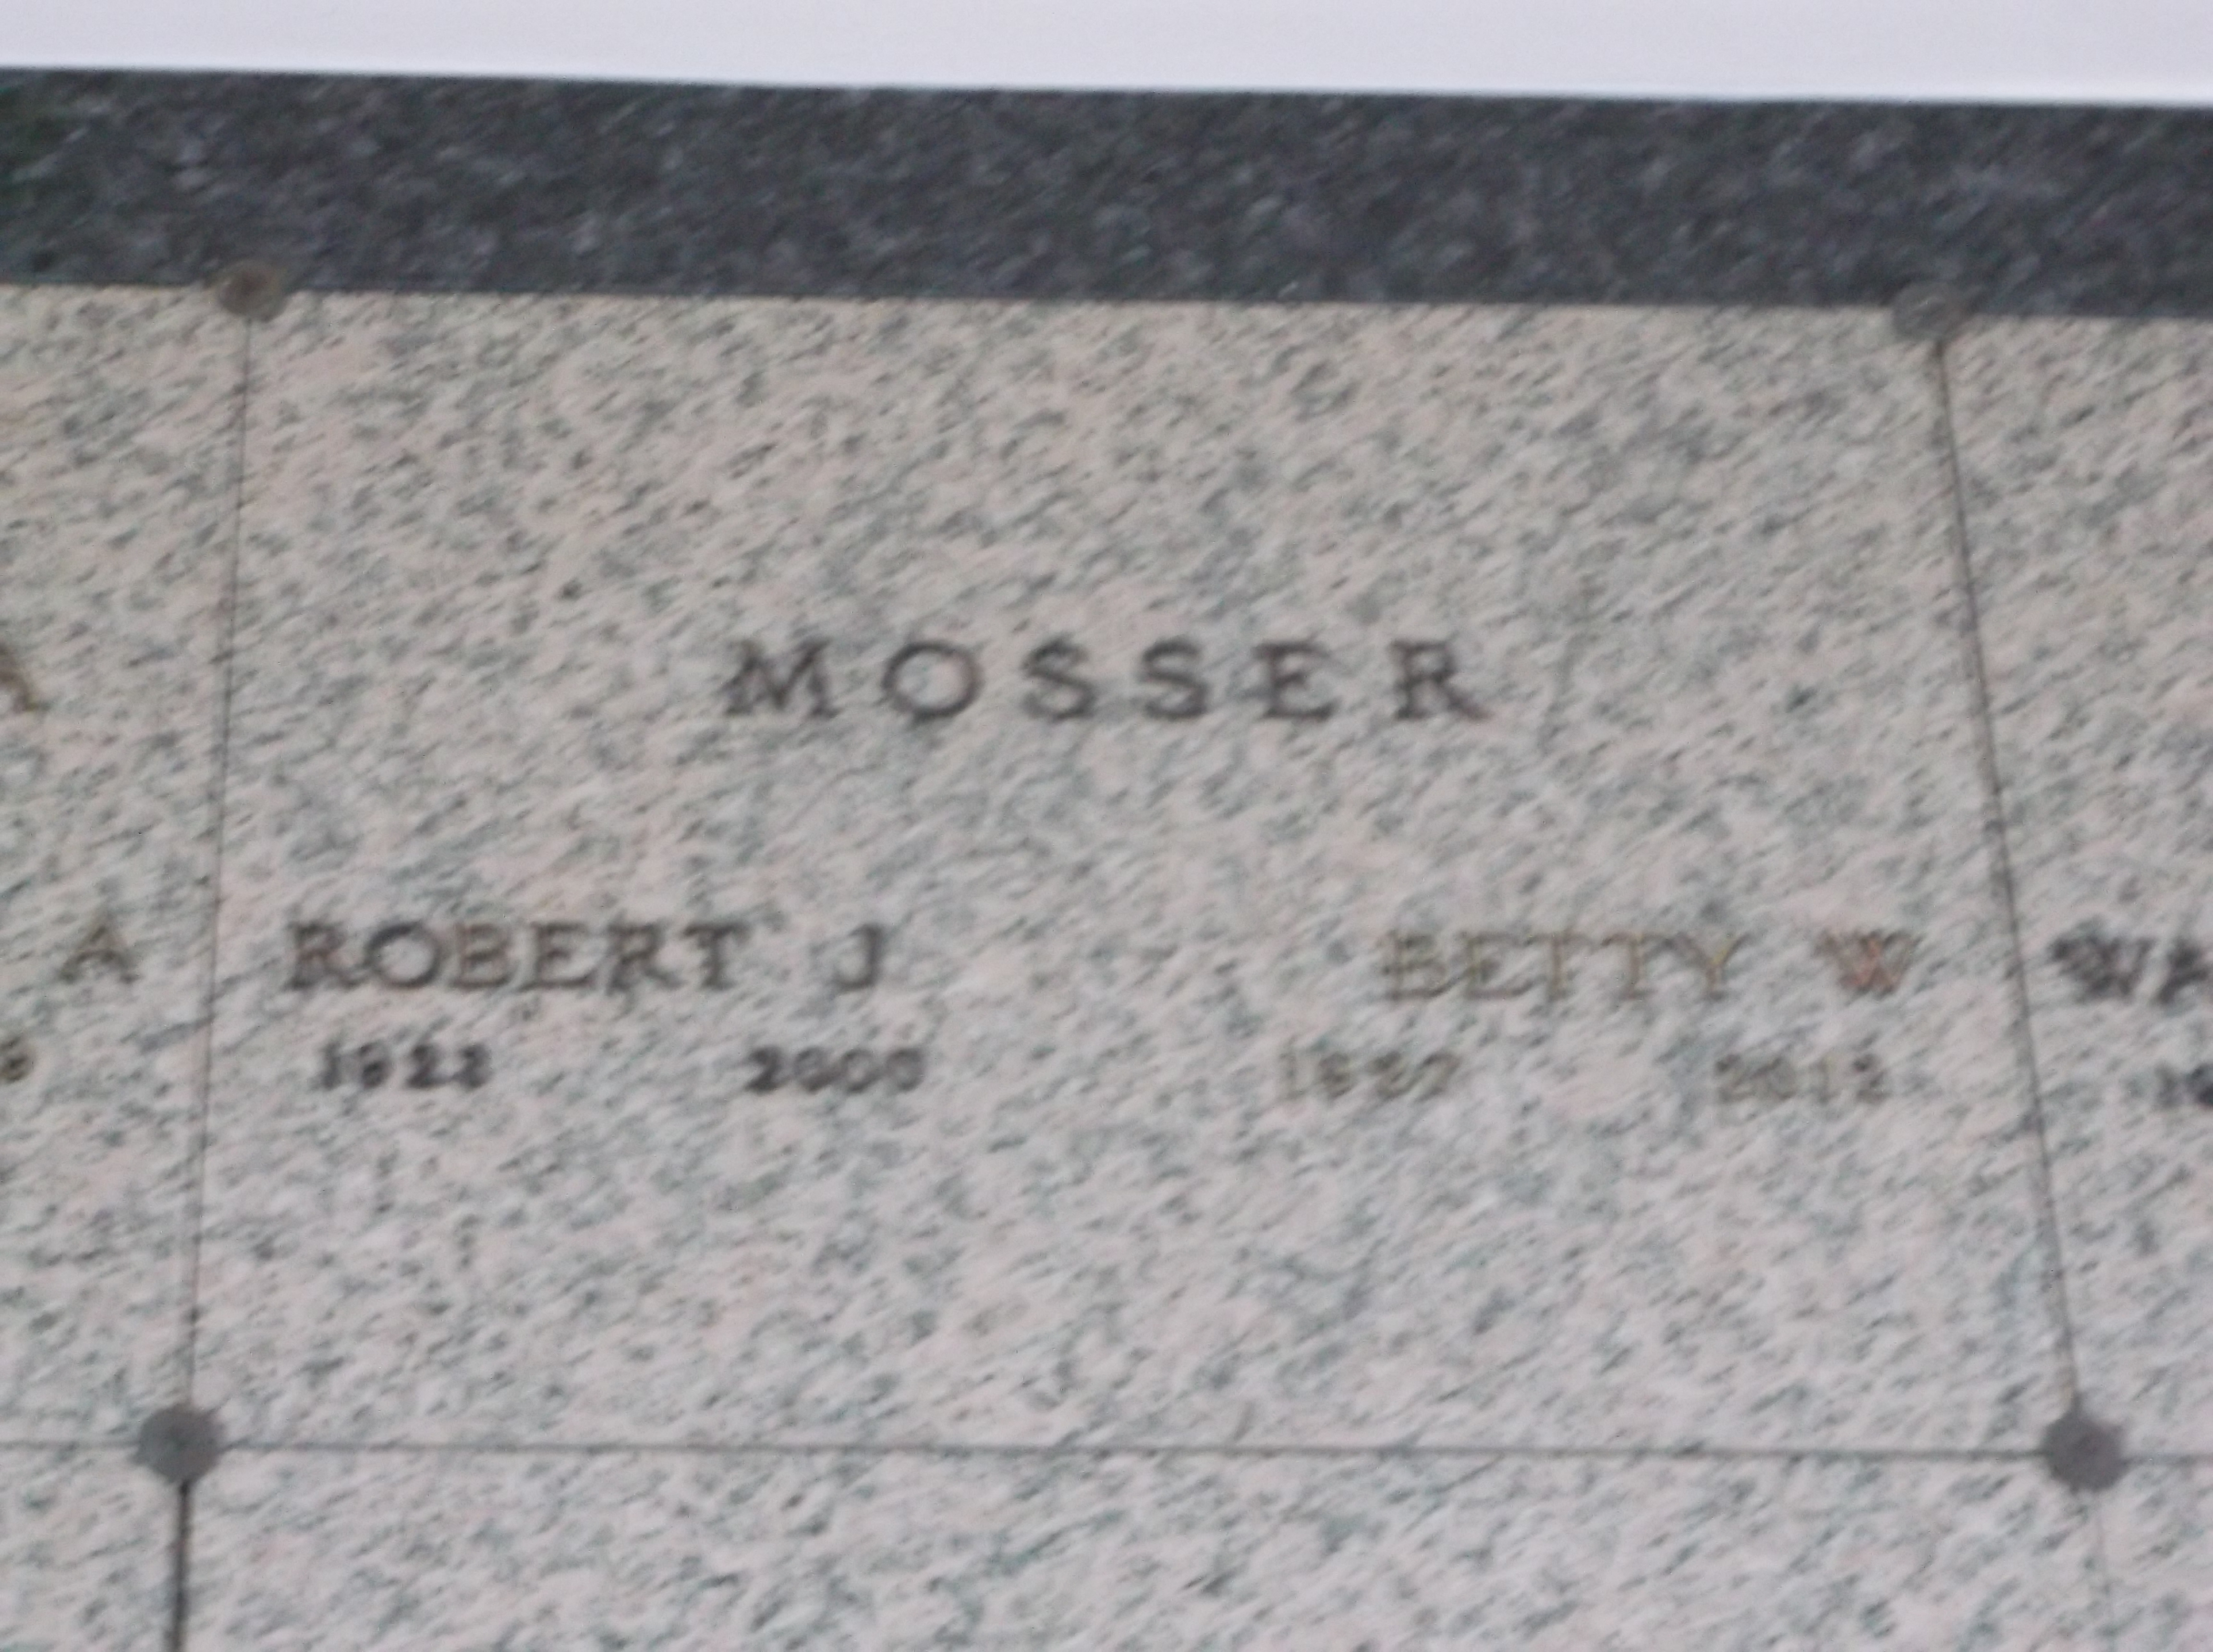 Robert J Mosser